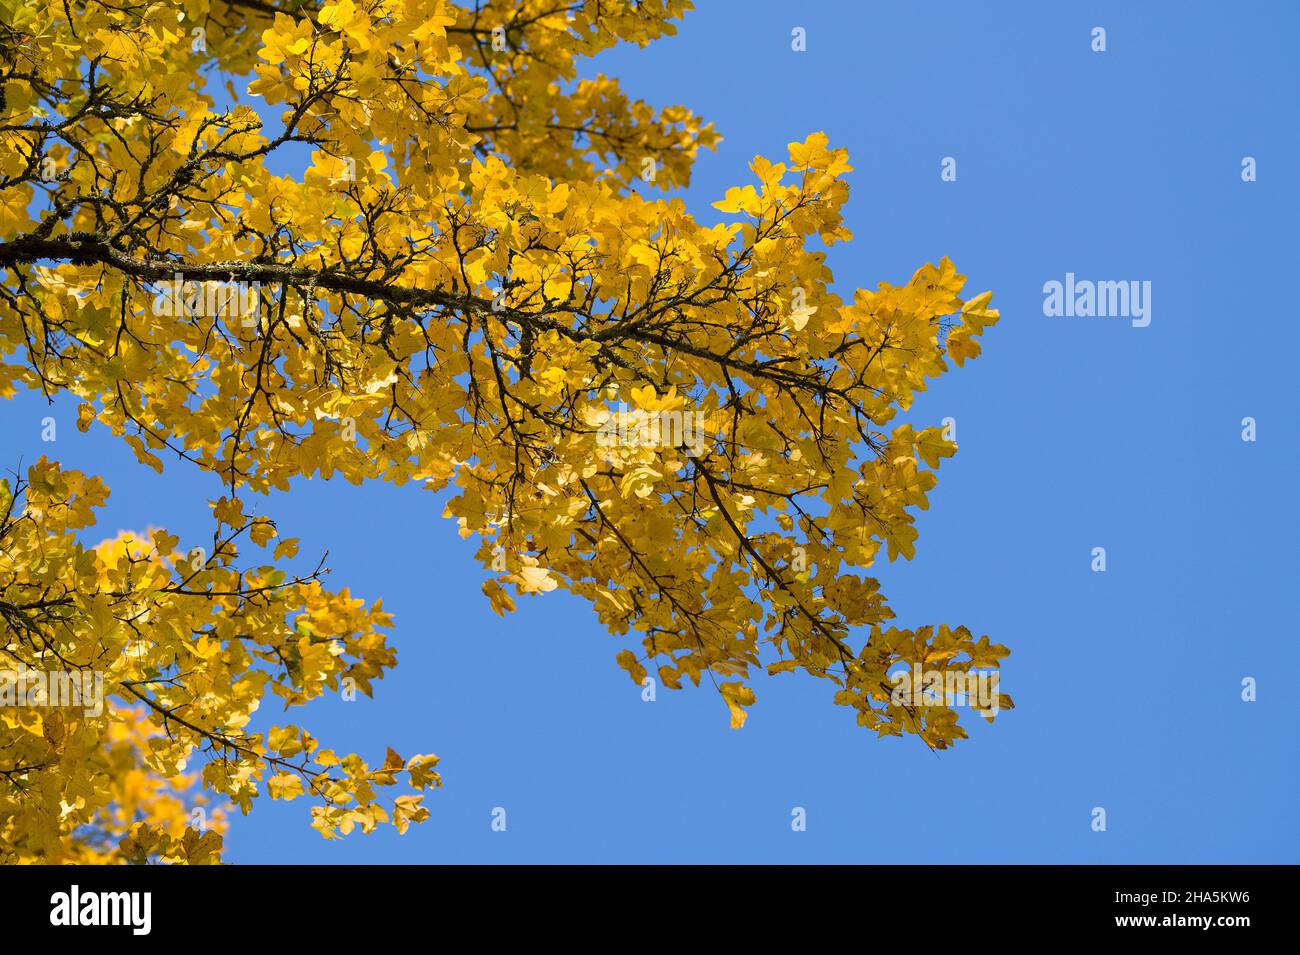 foglie gialle dell'acero da campo (acer campestre) contro un cielo blu, colori autunnali, luce naturale, germania Foto Stock